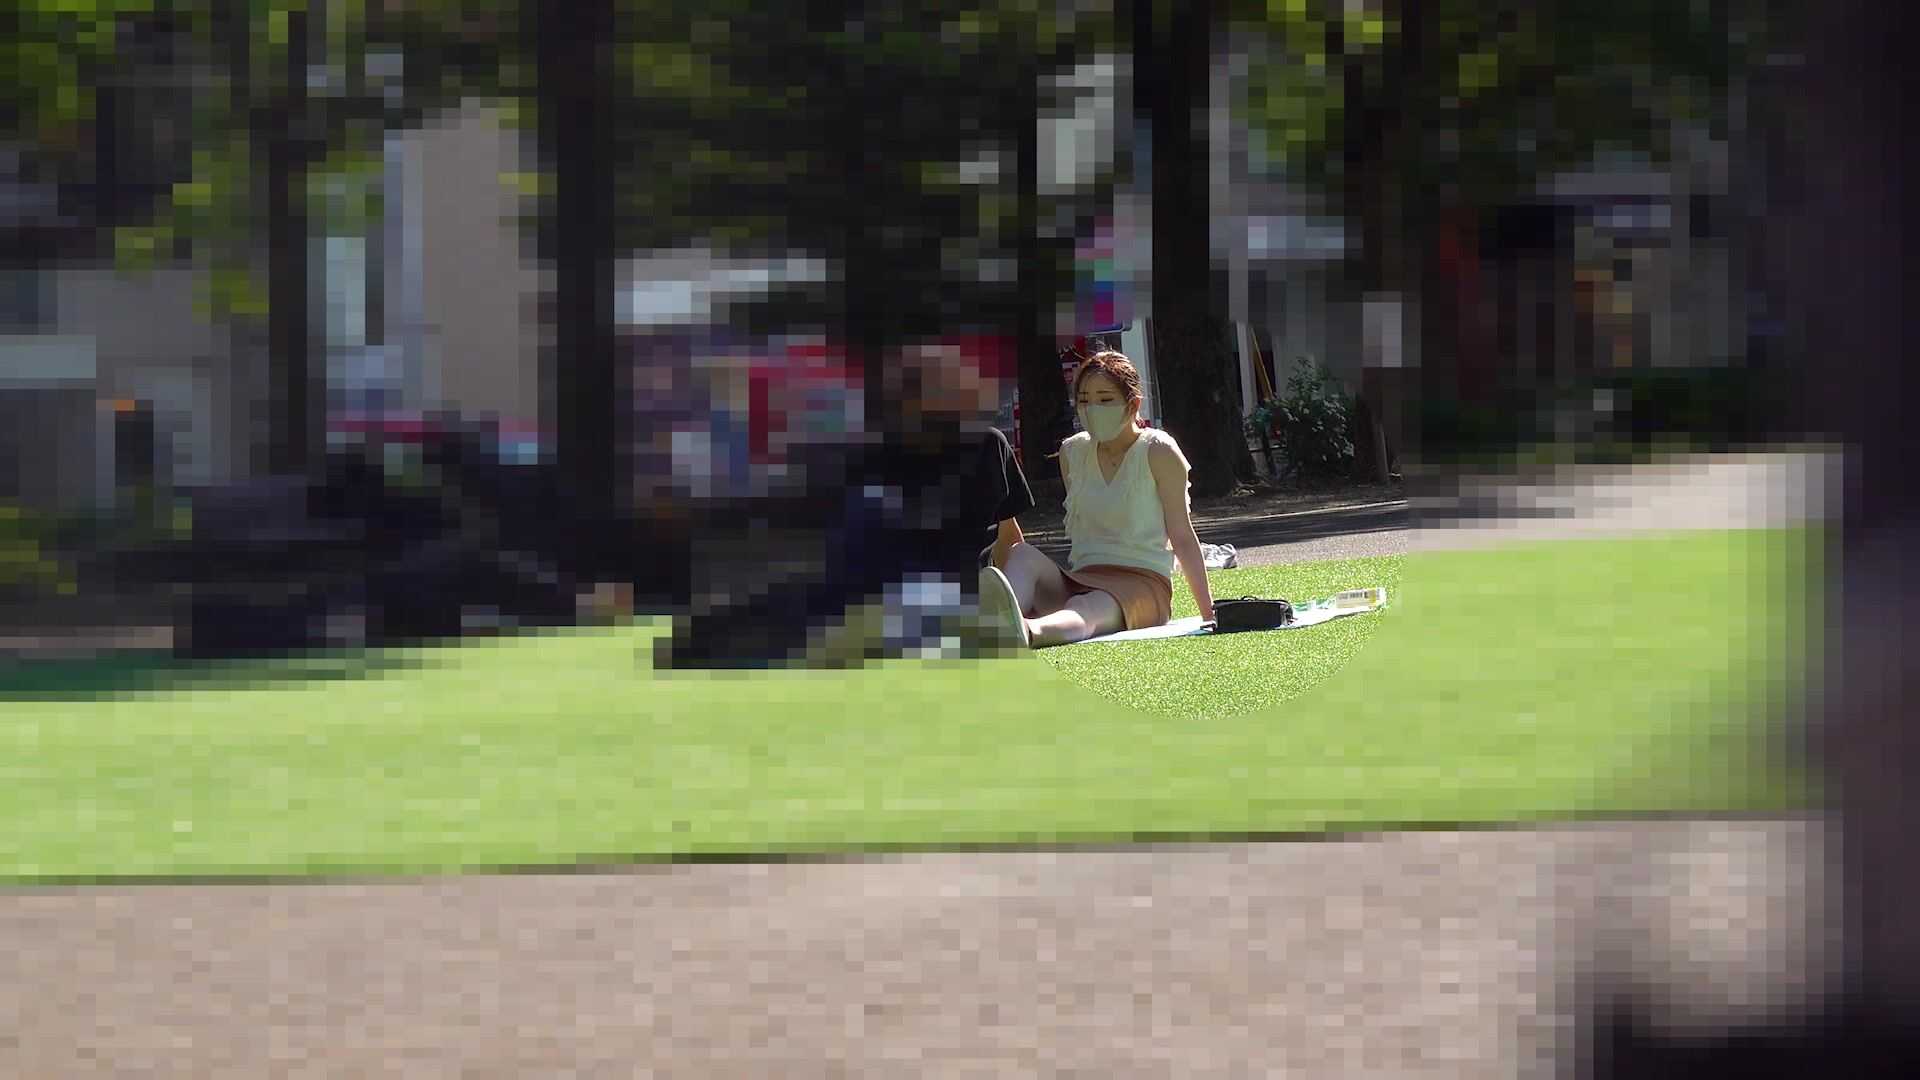 【TP推薦】 公園草坪高清拍攝高顏值口罩女與男友聊天 霸氣外泄白色透明小內內 三角區毛毛濃密